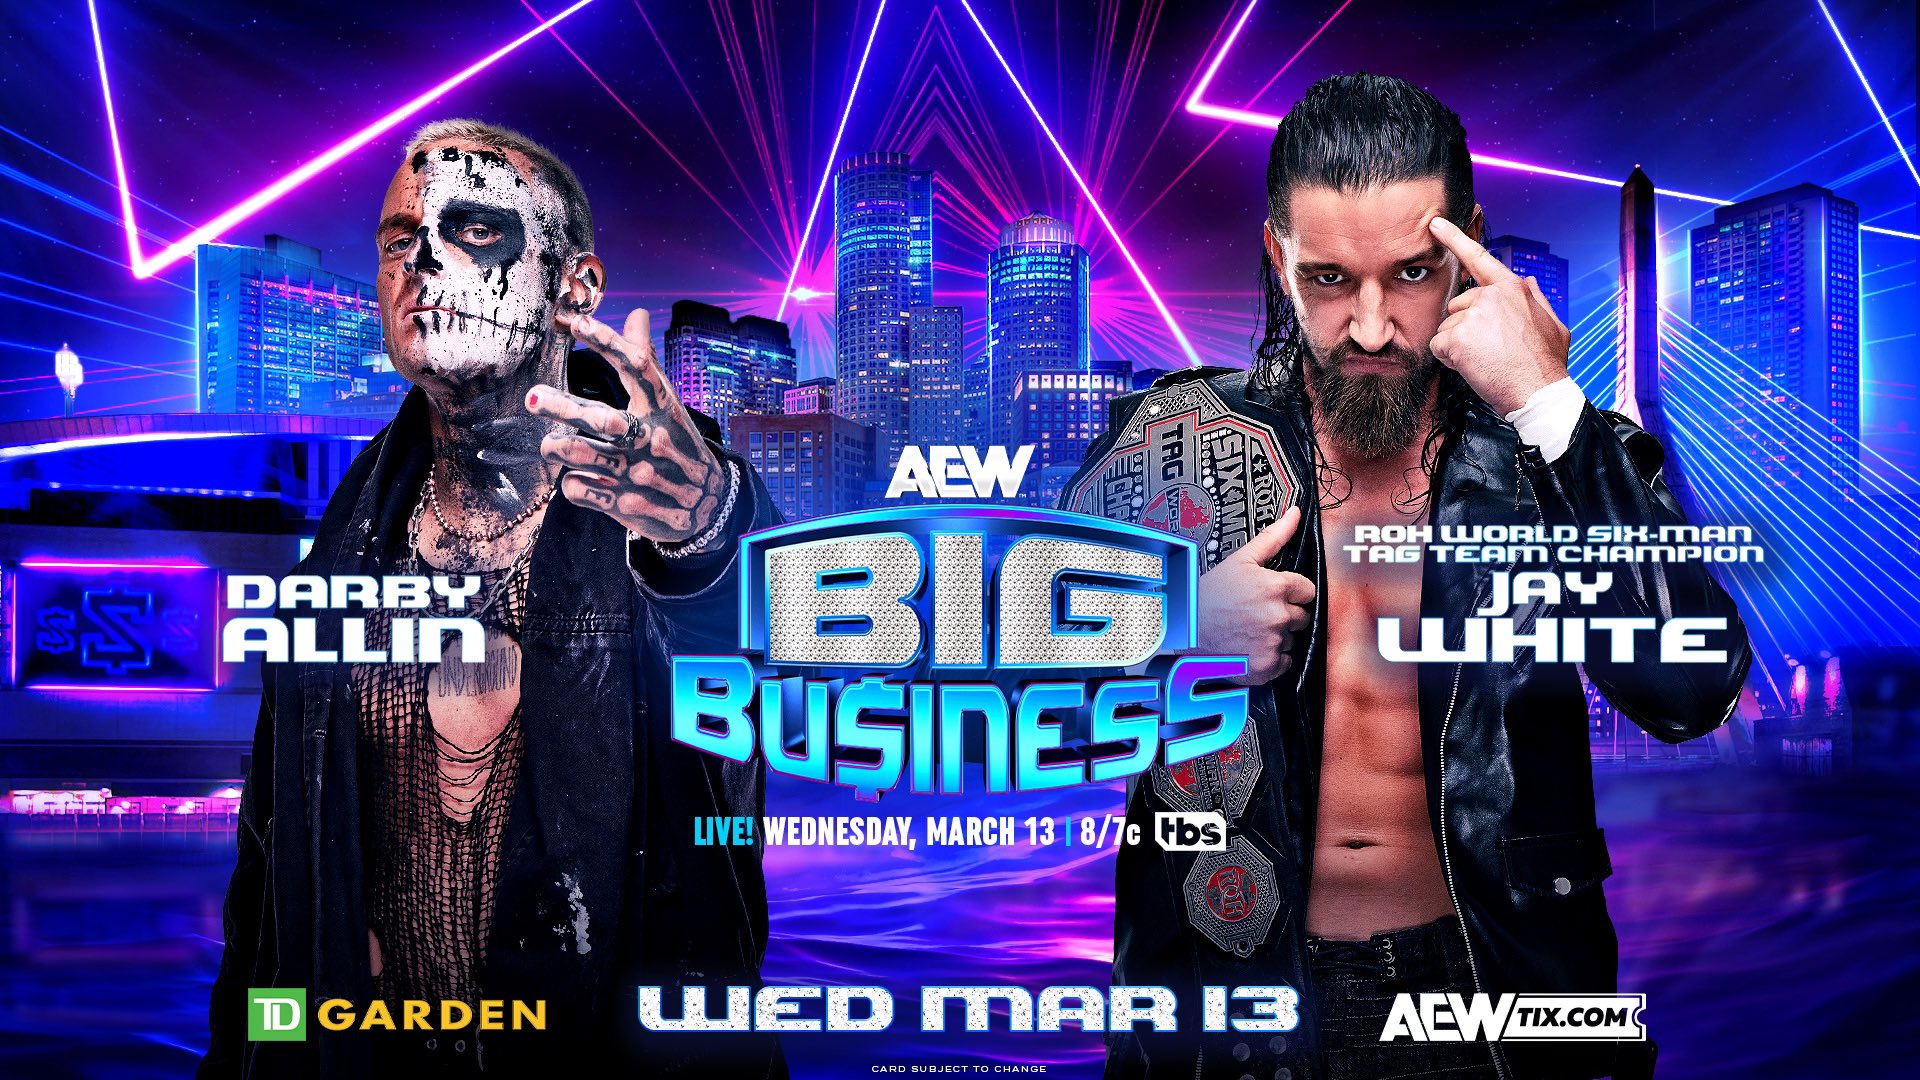 Un premier match annoncé pour AEW Big Business.